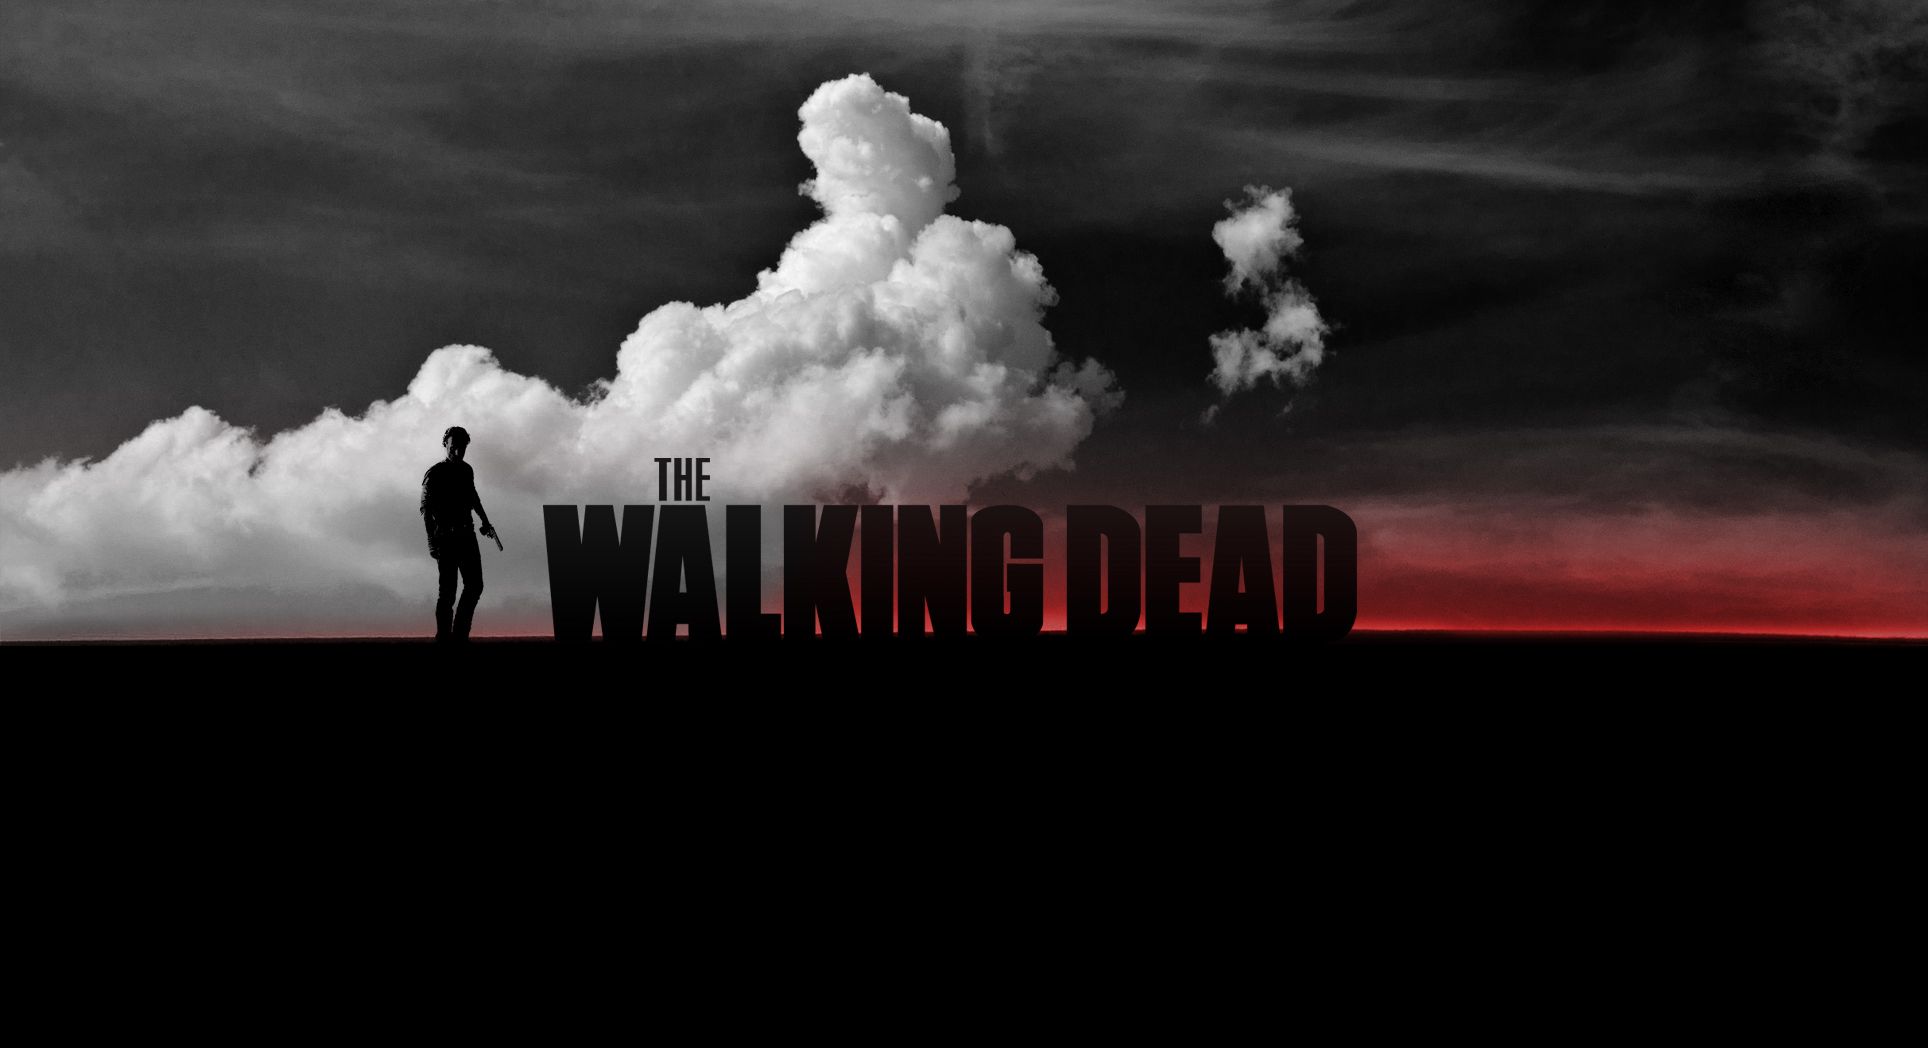 The Walking Dead Wallpaper.jpg |